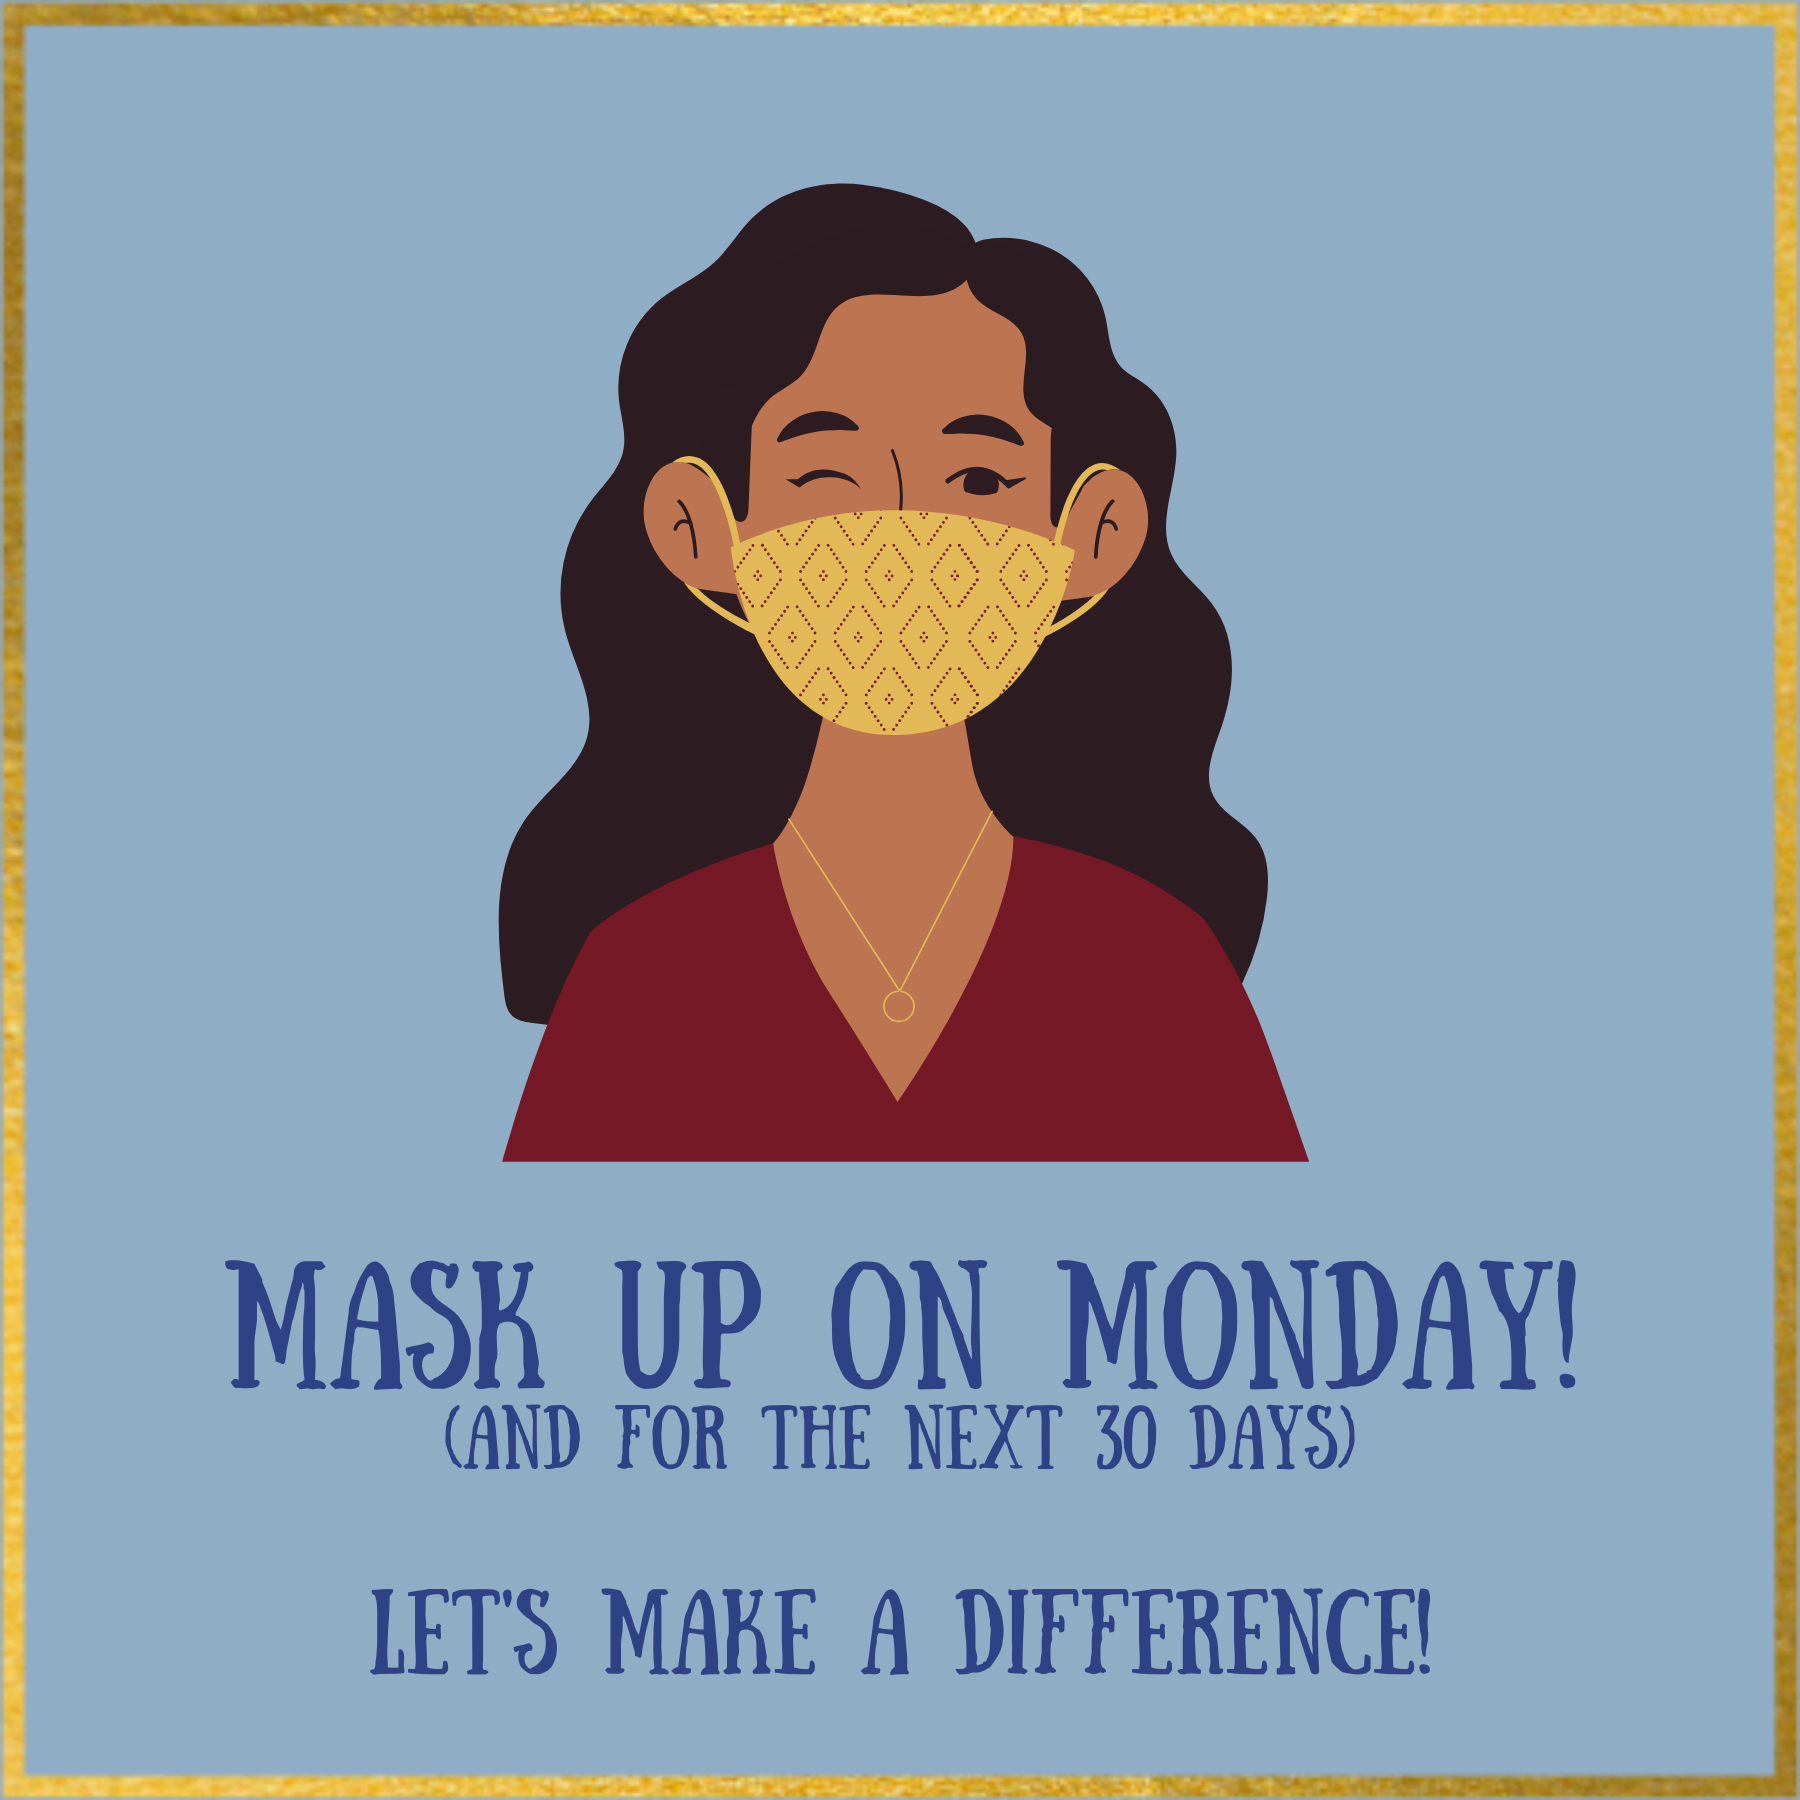 Mask up on Monday!